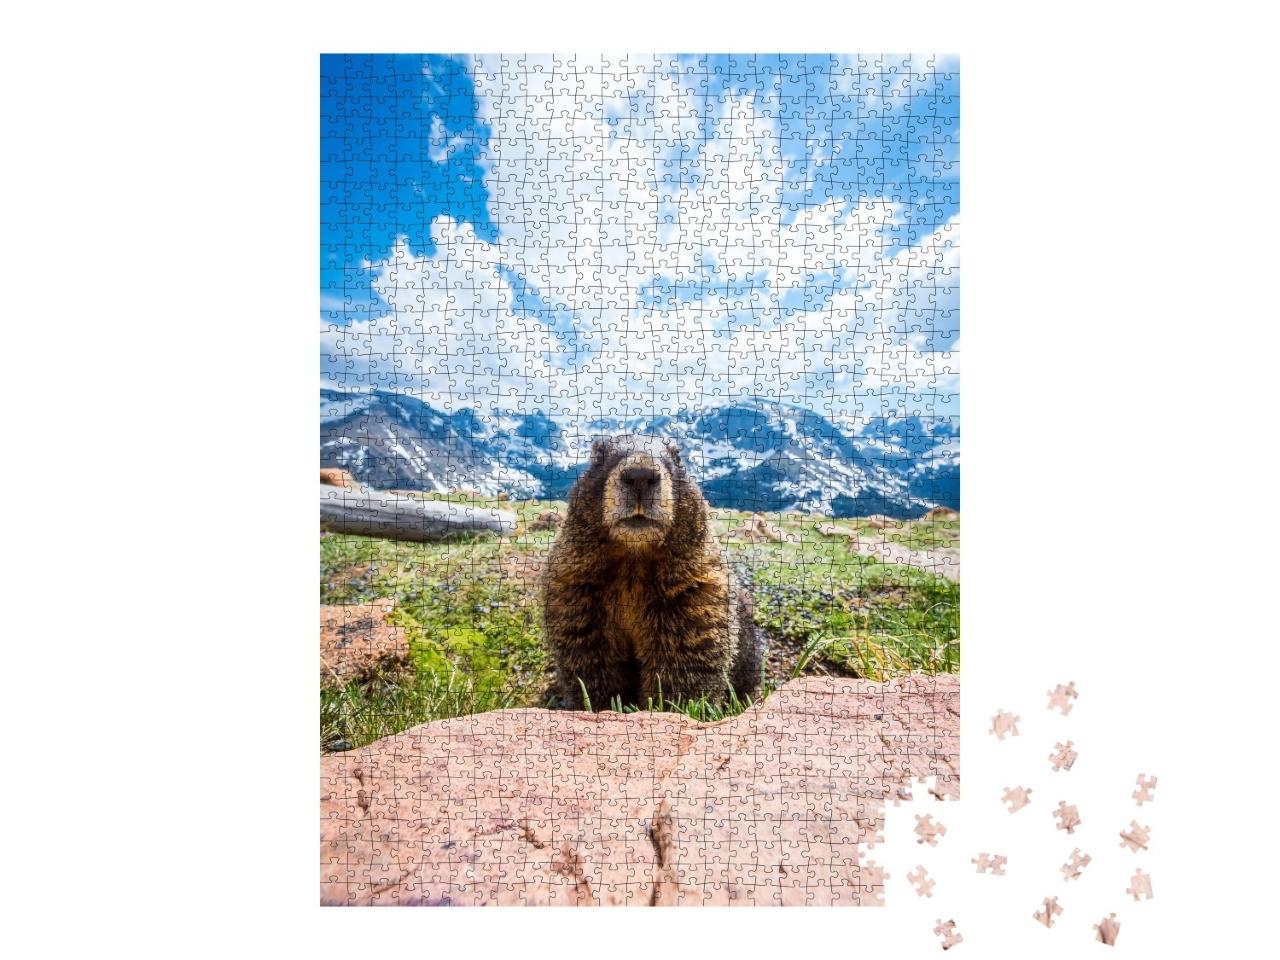 Puzzle de 1000 pièces « Une marmotte curieuse dans le Rocky Mountain National Park, Californie »